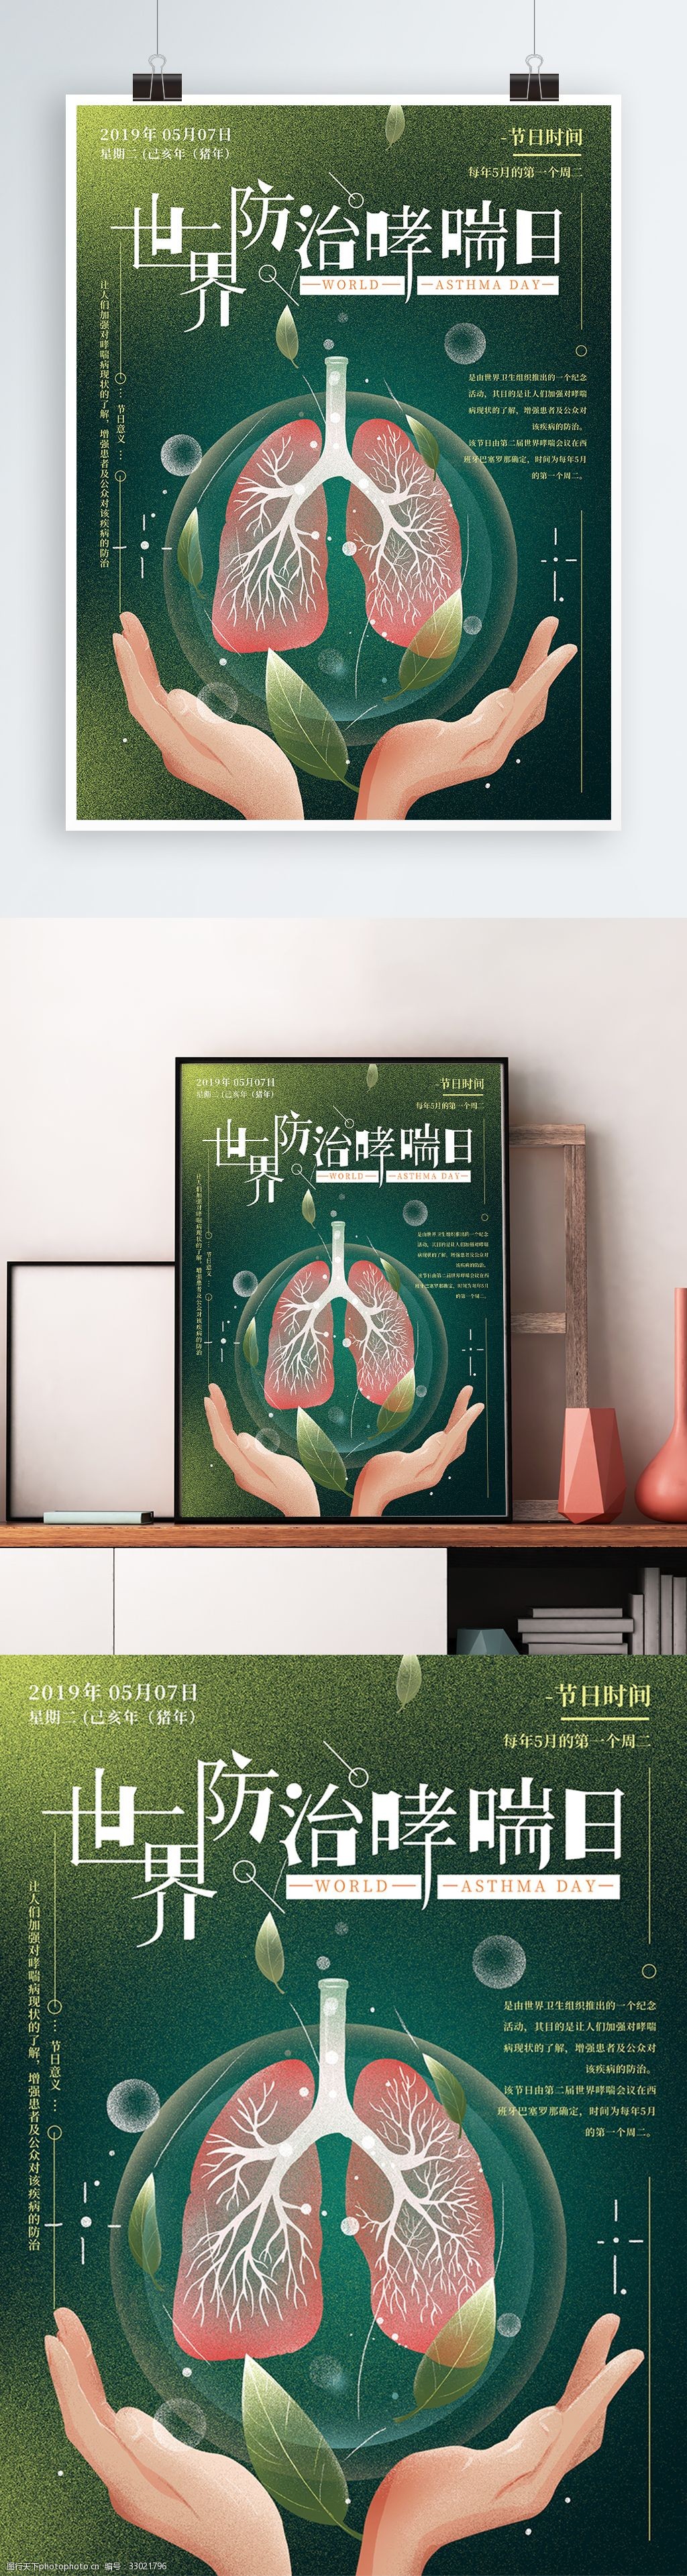 关键词:原创手绘世界防治哮喘日海报 简约 手绘 健康 预防哮喘 海报